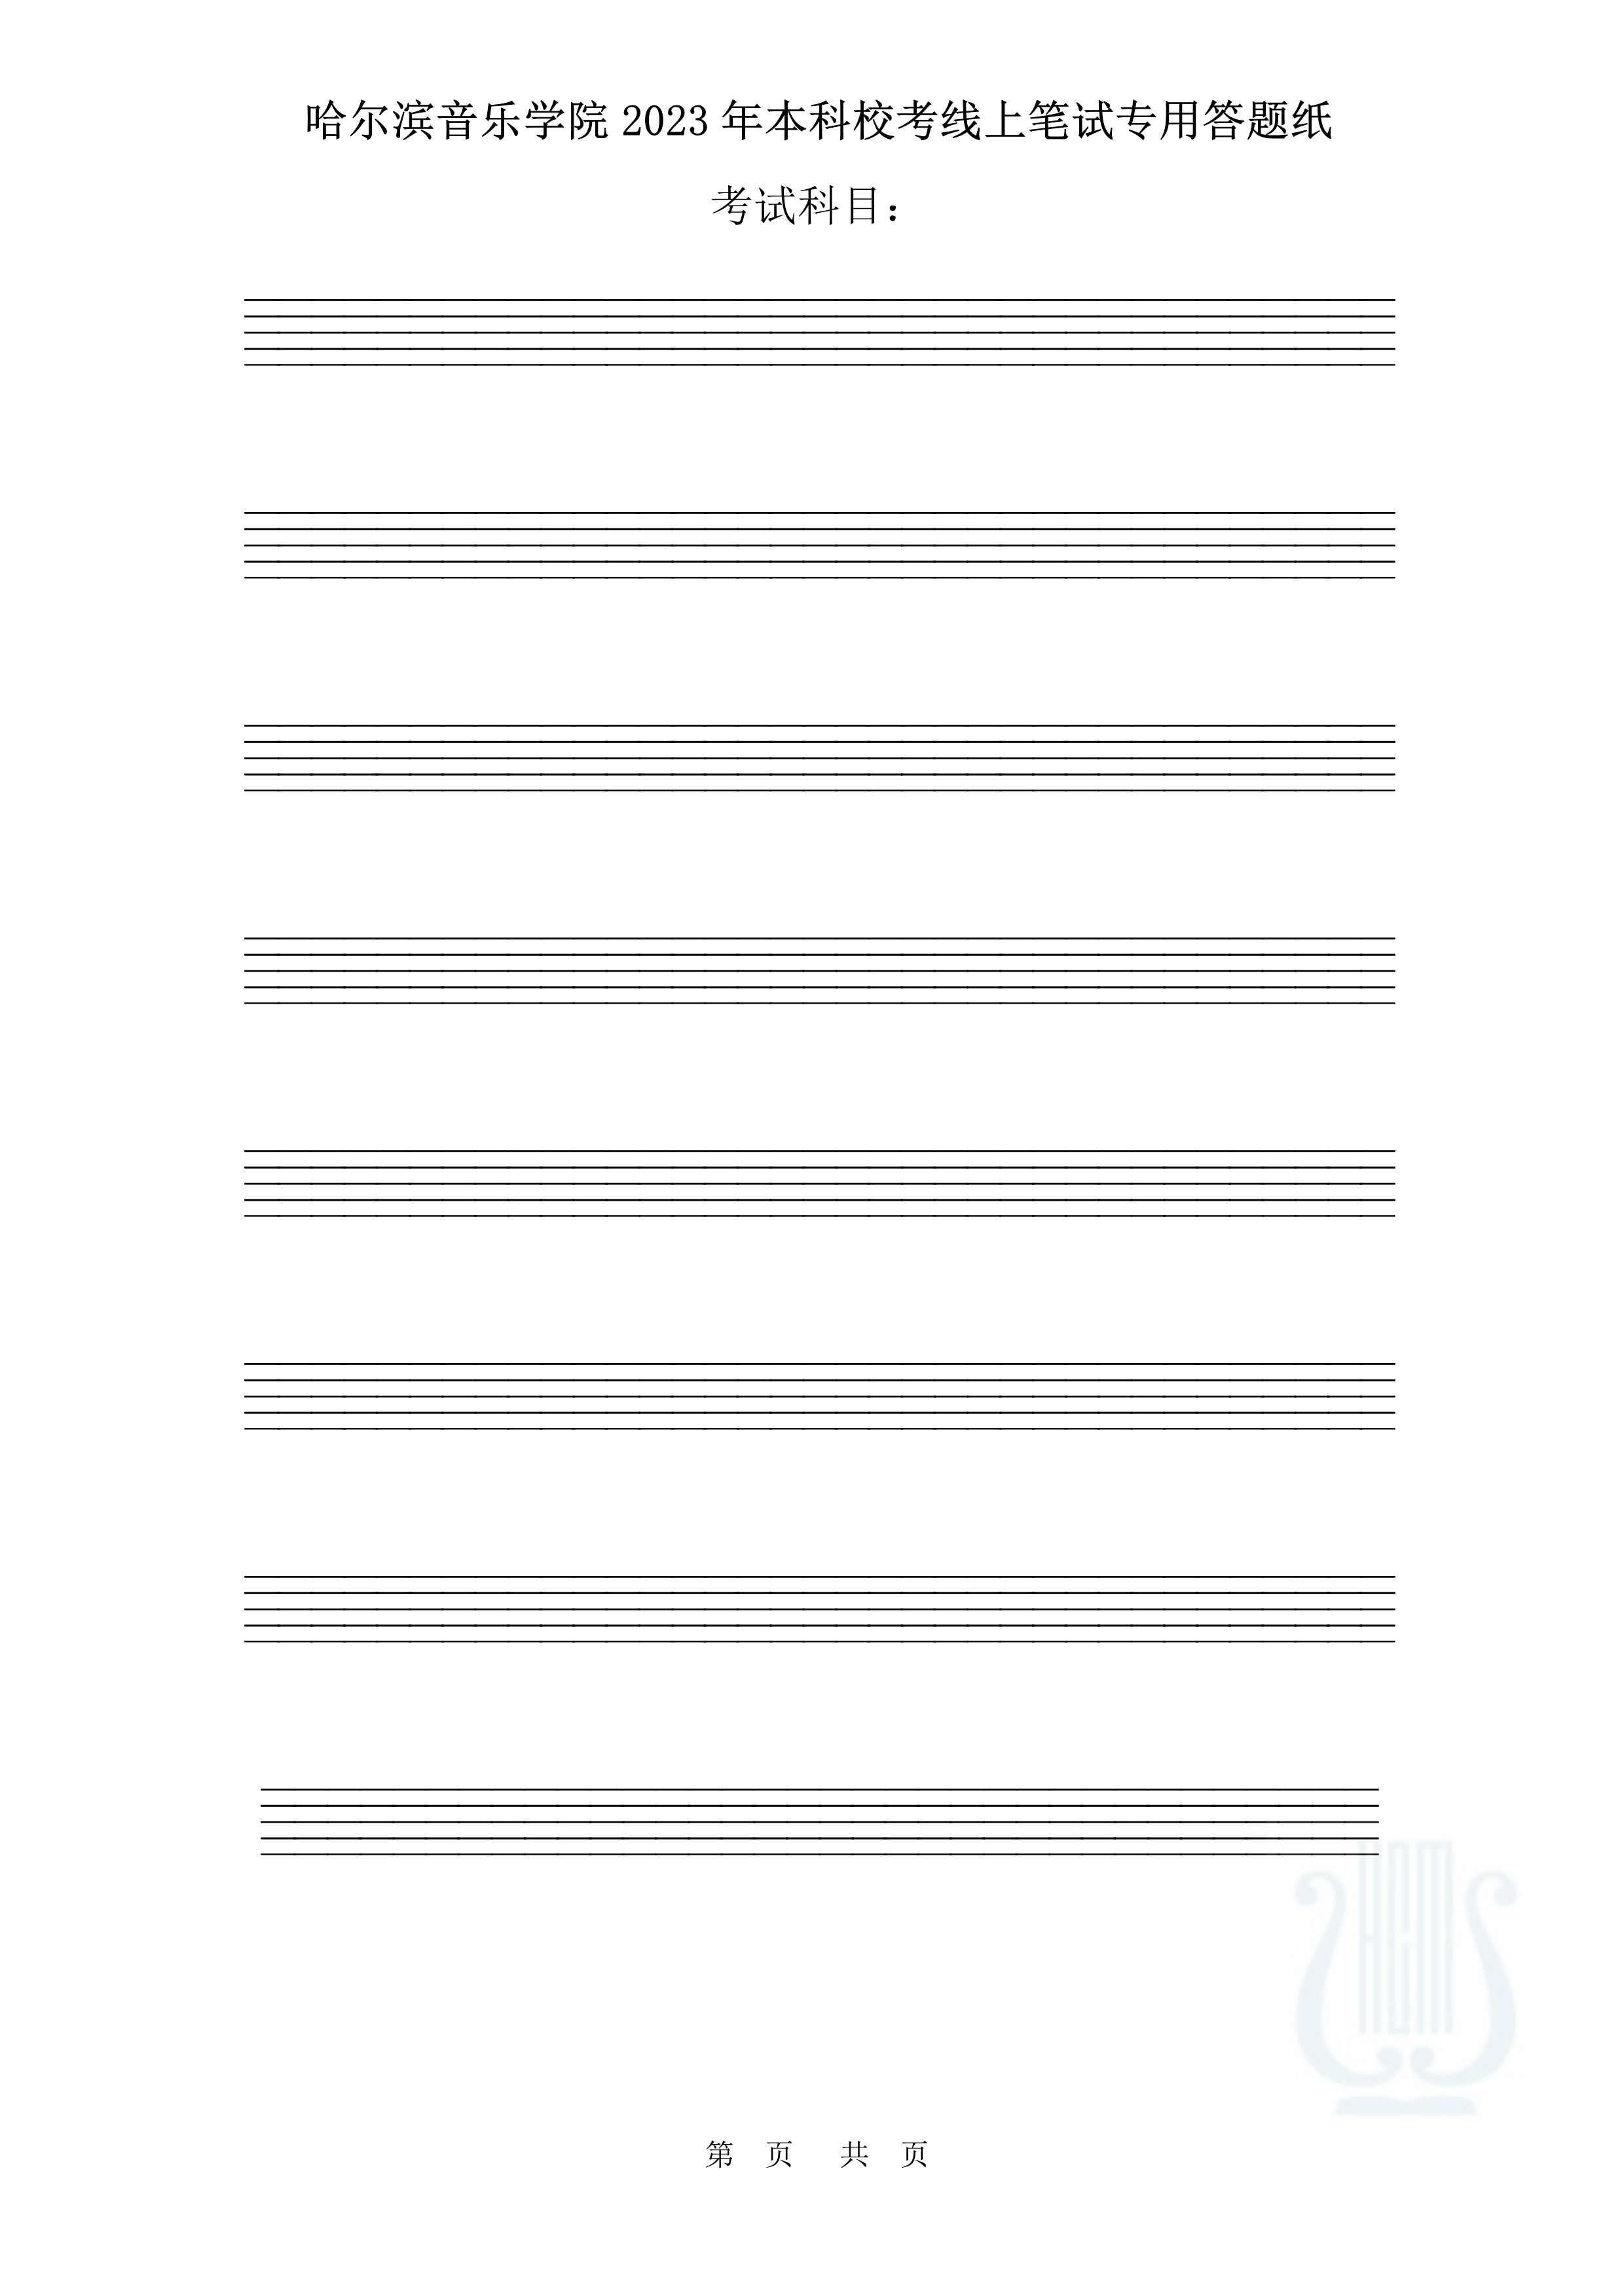 哈尔滨音乐学院2023年本科校考线上笔试答题纸（作曲与作曲技术理论）_1.jpg